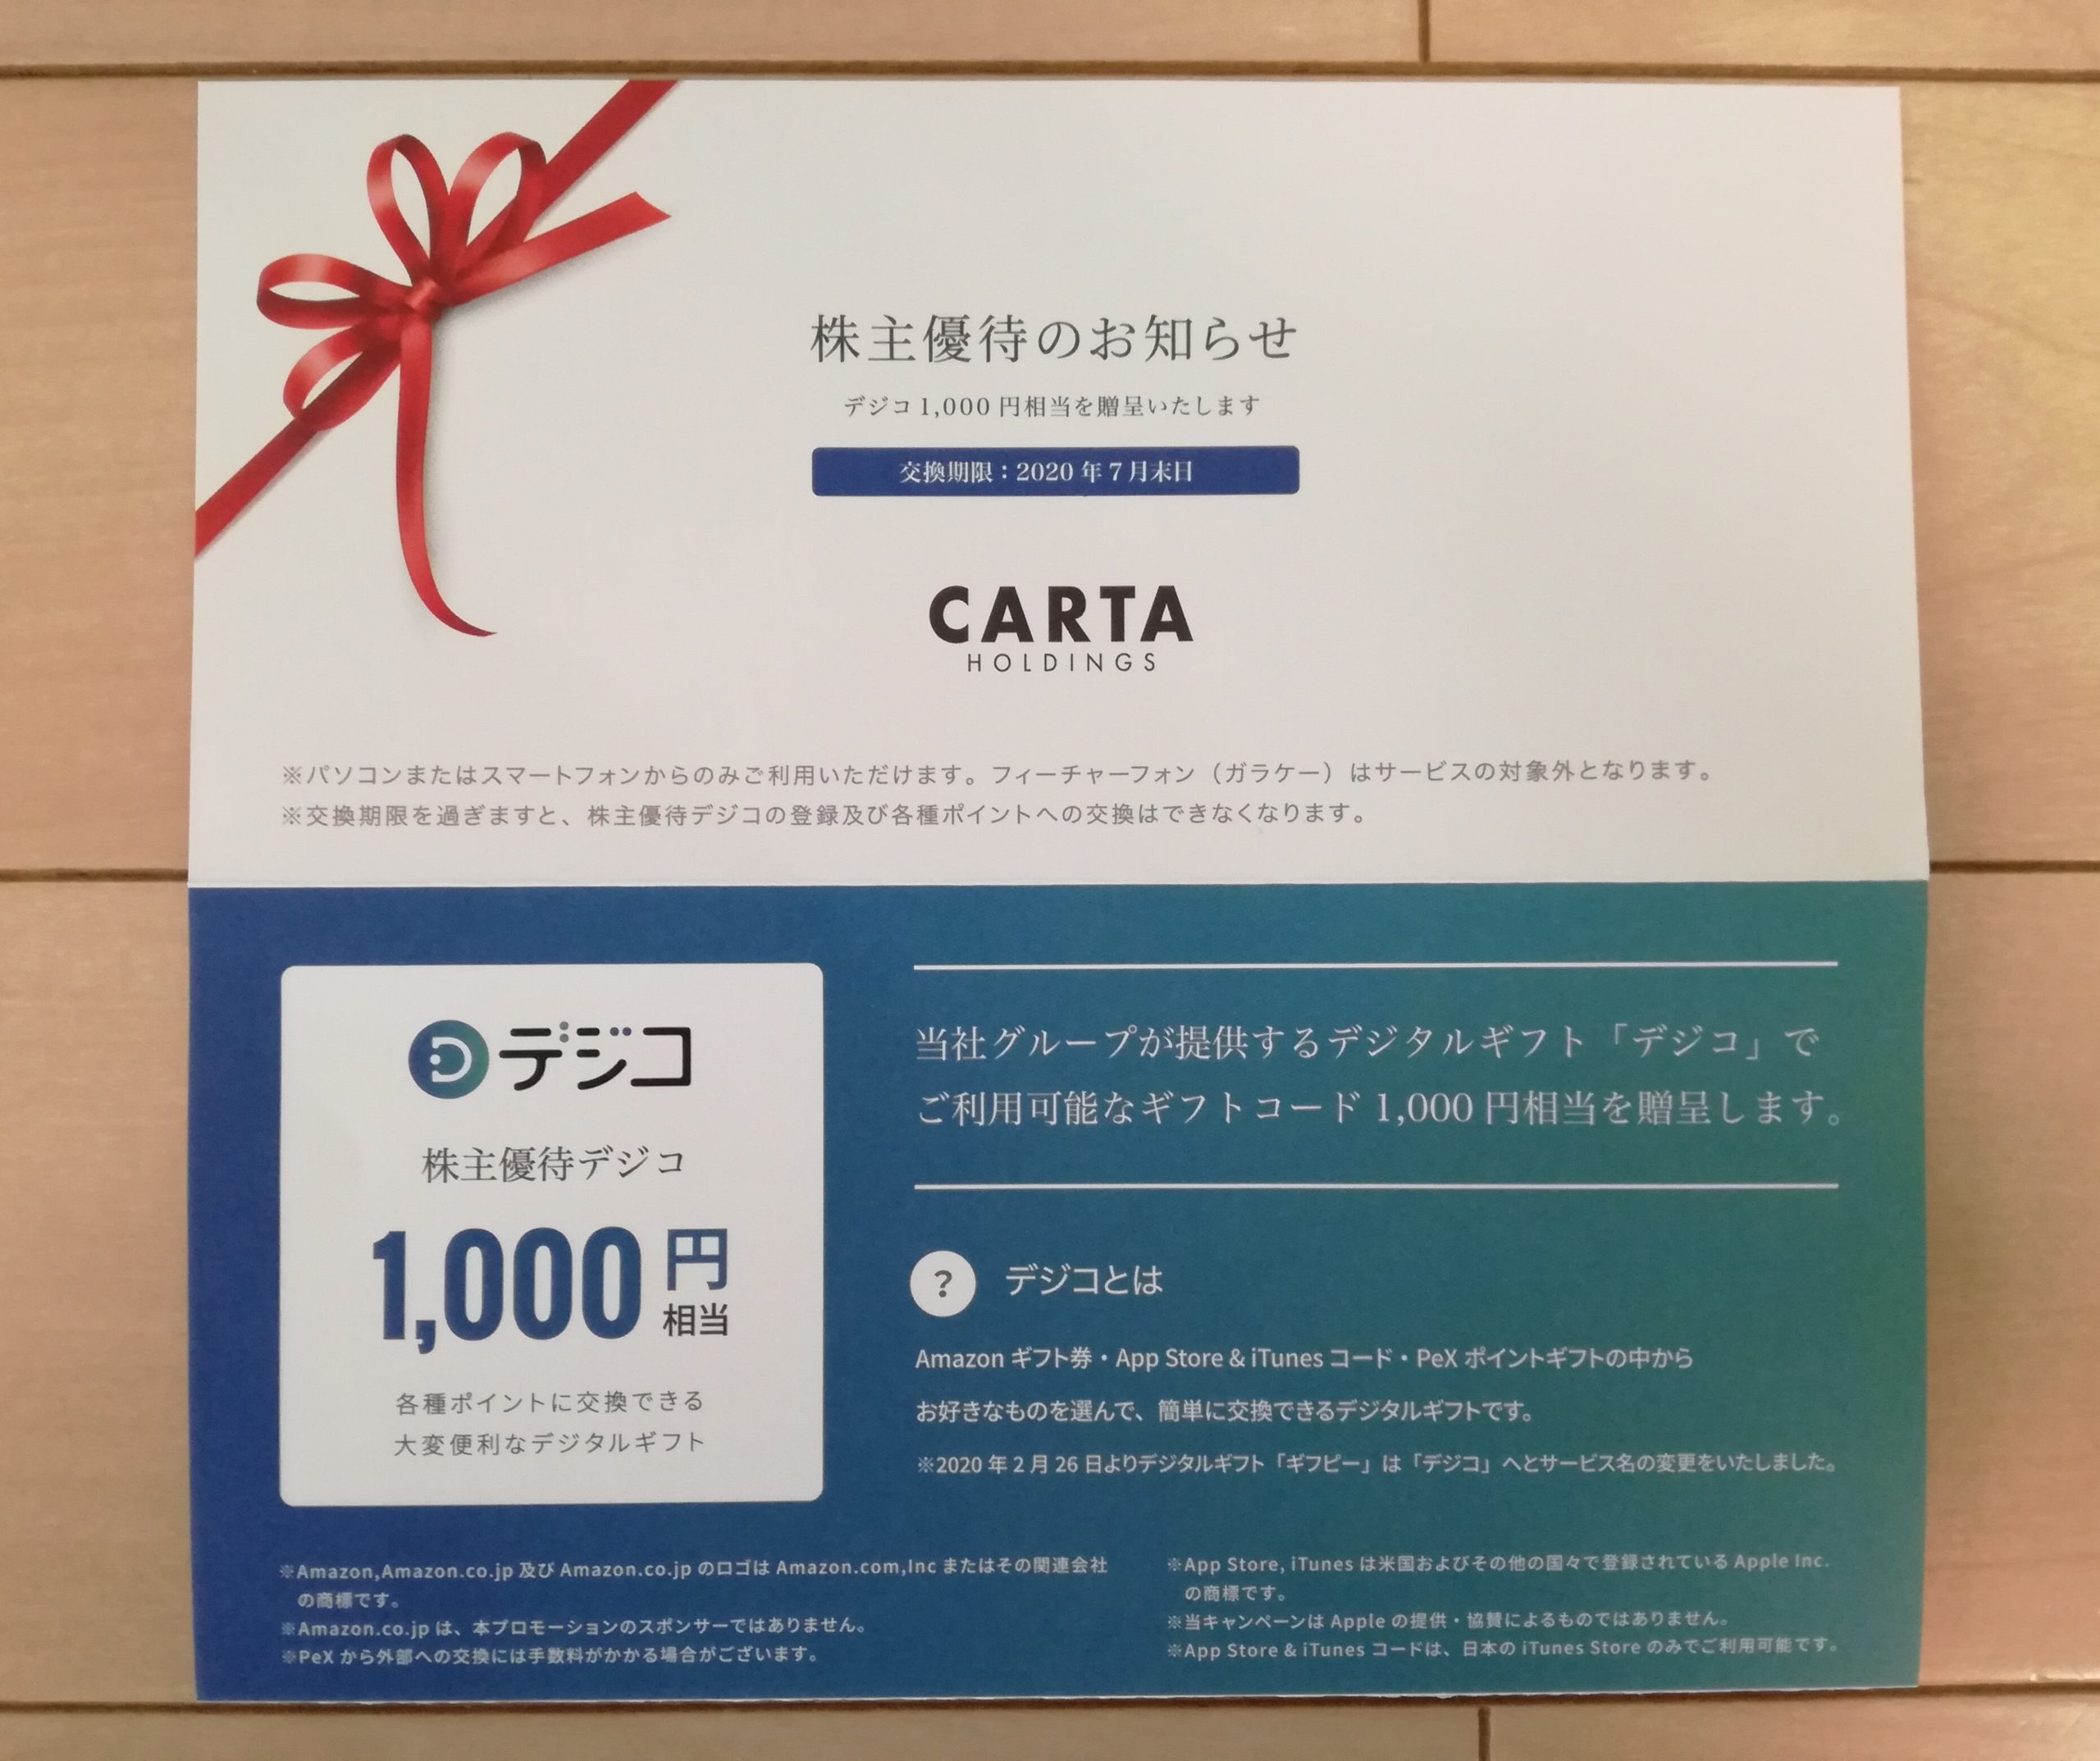 CARTA HOLDINGS（3688）の株主優待デジコ1,000円相当が到着！Amazonギフト券と交換します！